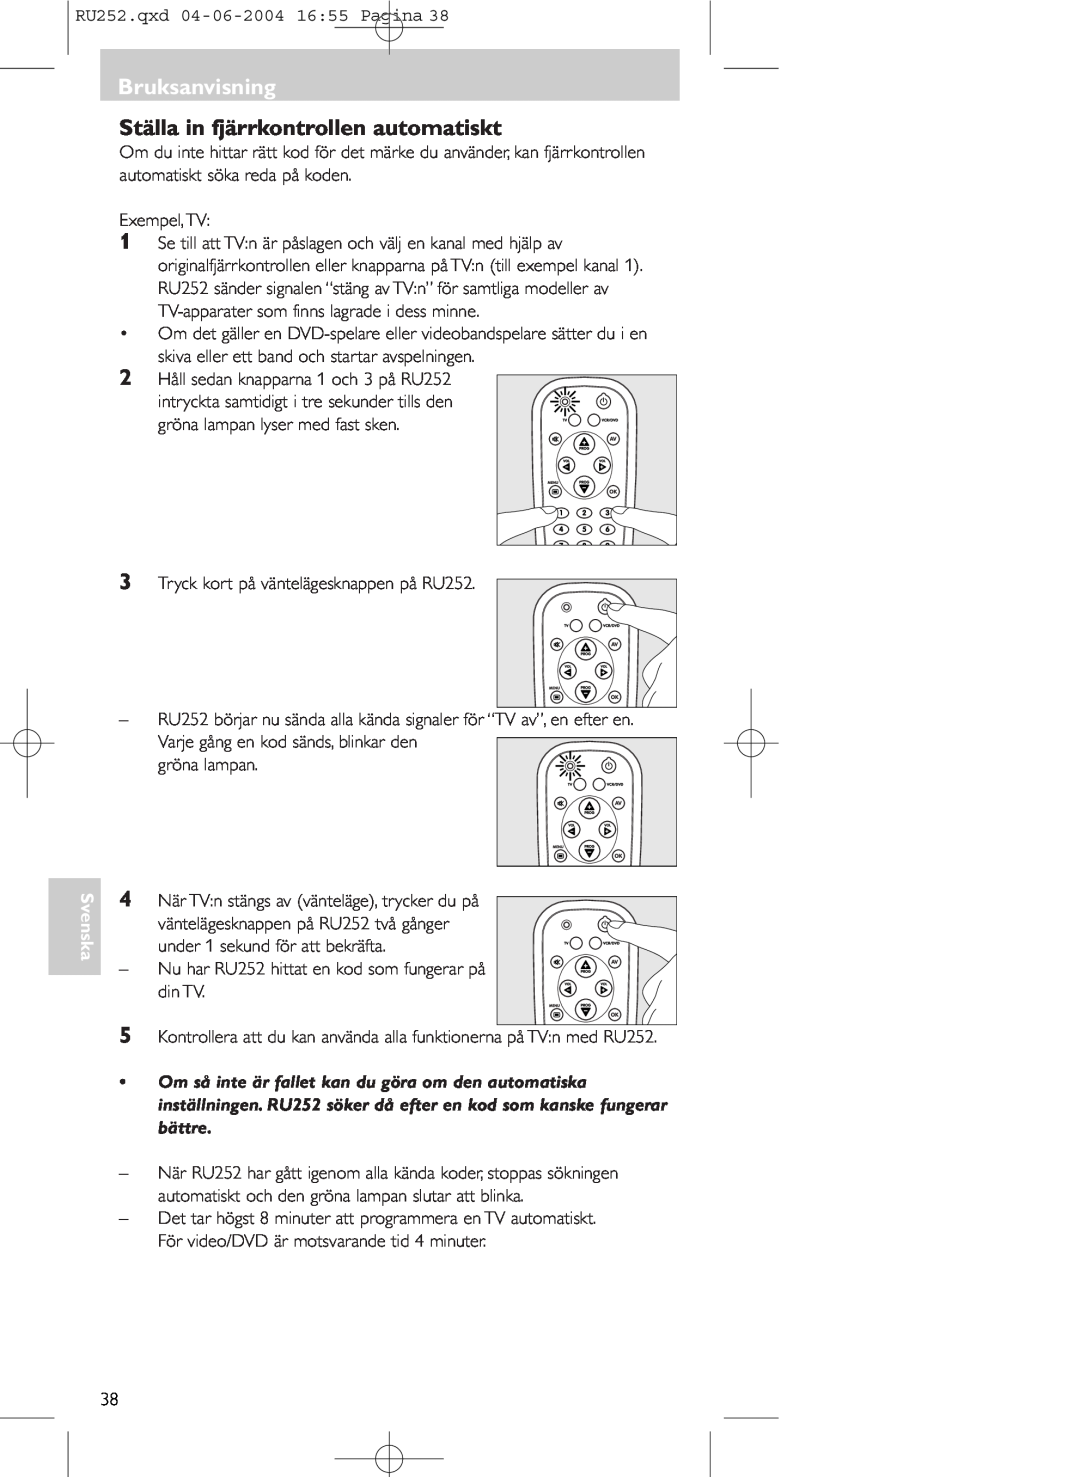 Philips SBC RU 252 manual Ställa in fjärrkontrollen automatiskt, Bruksanvisning, Svenska 